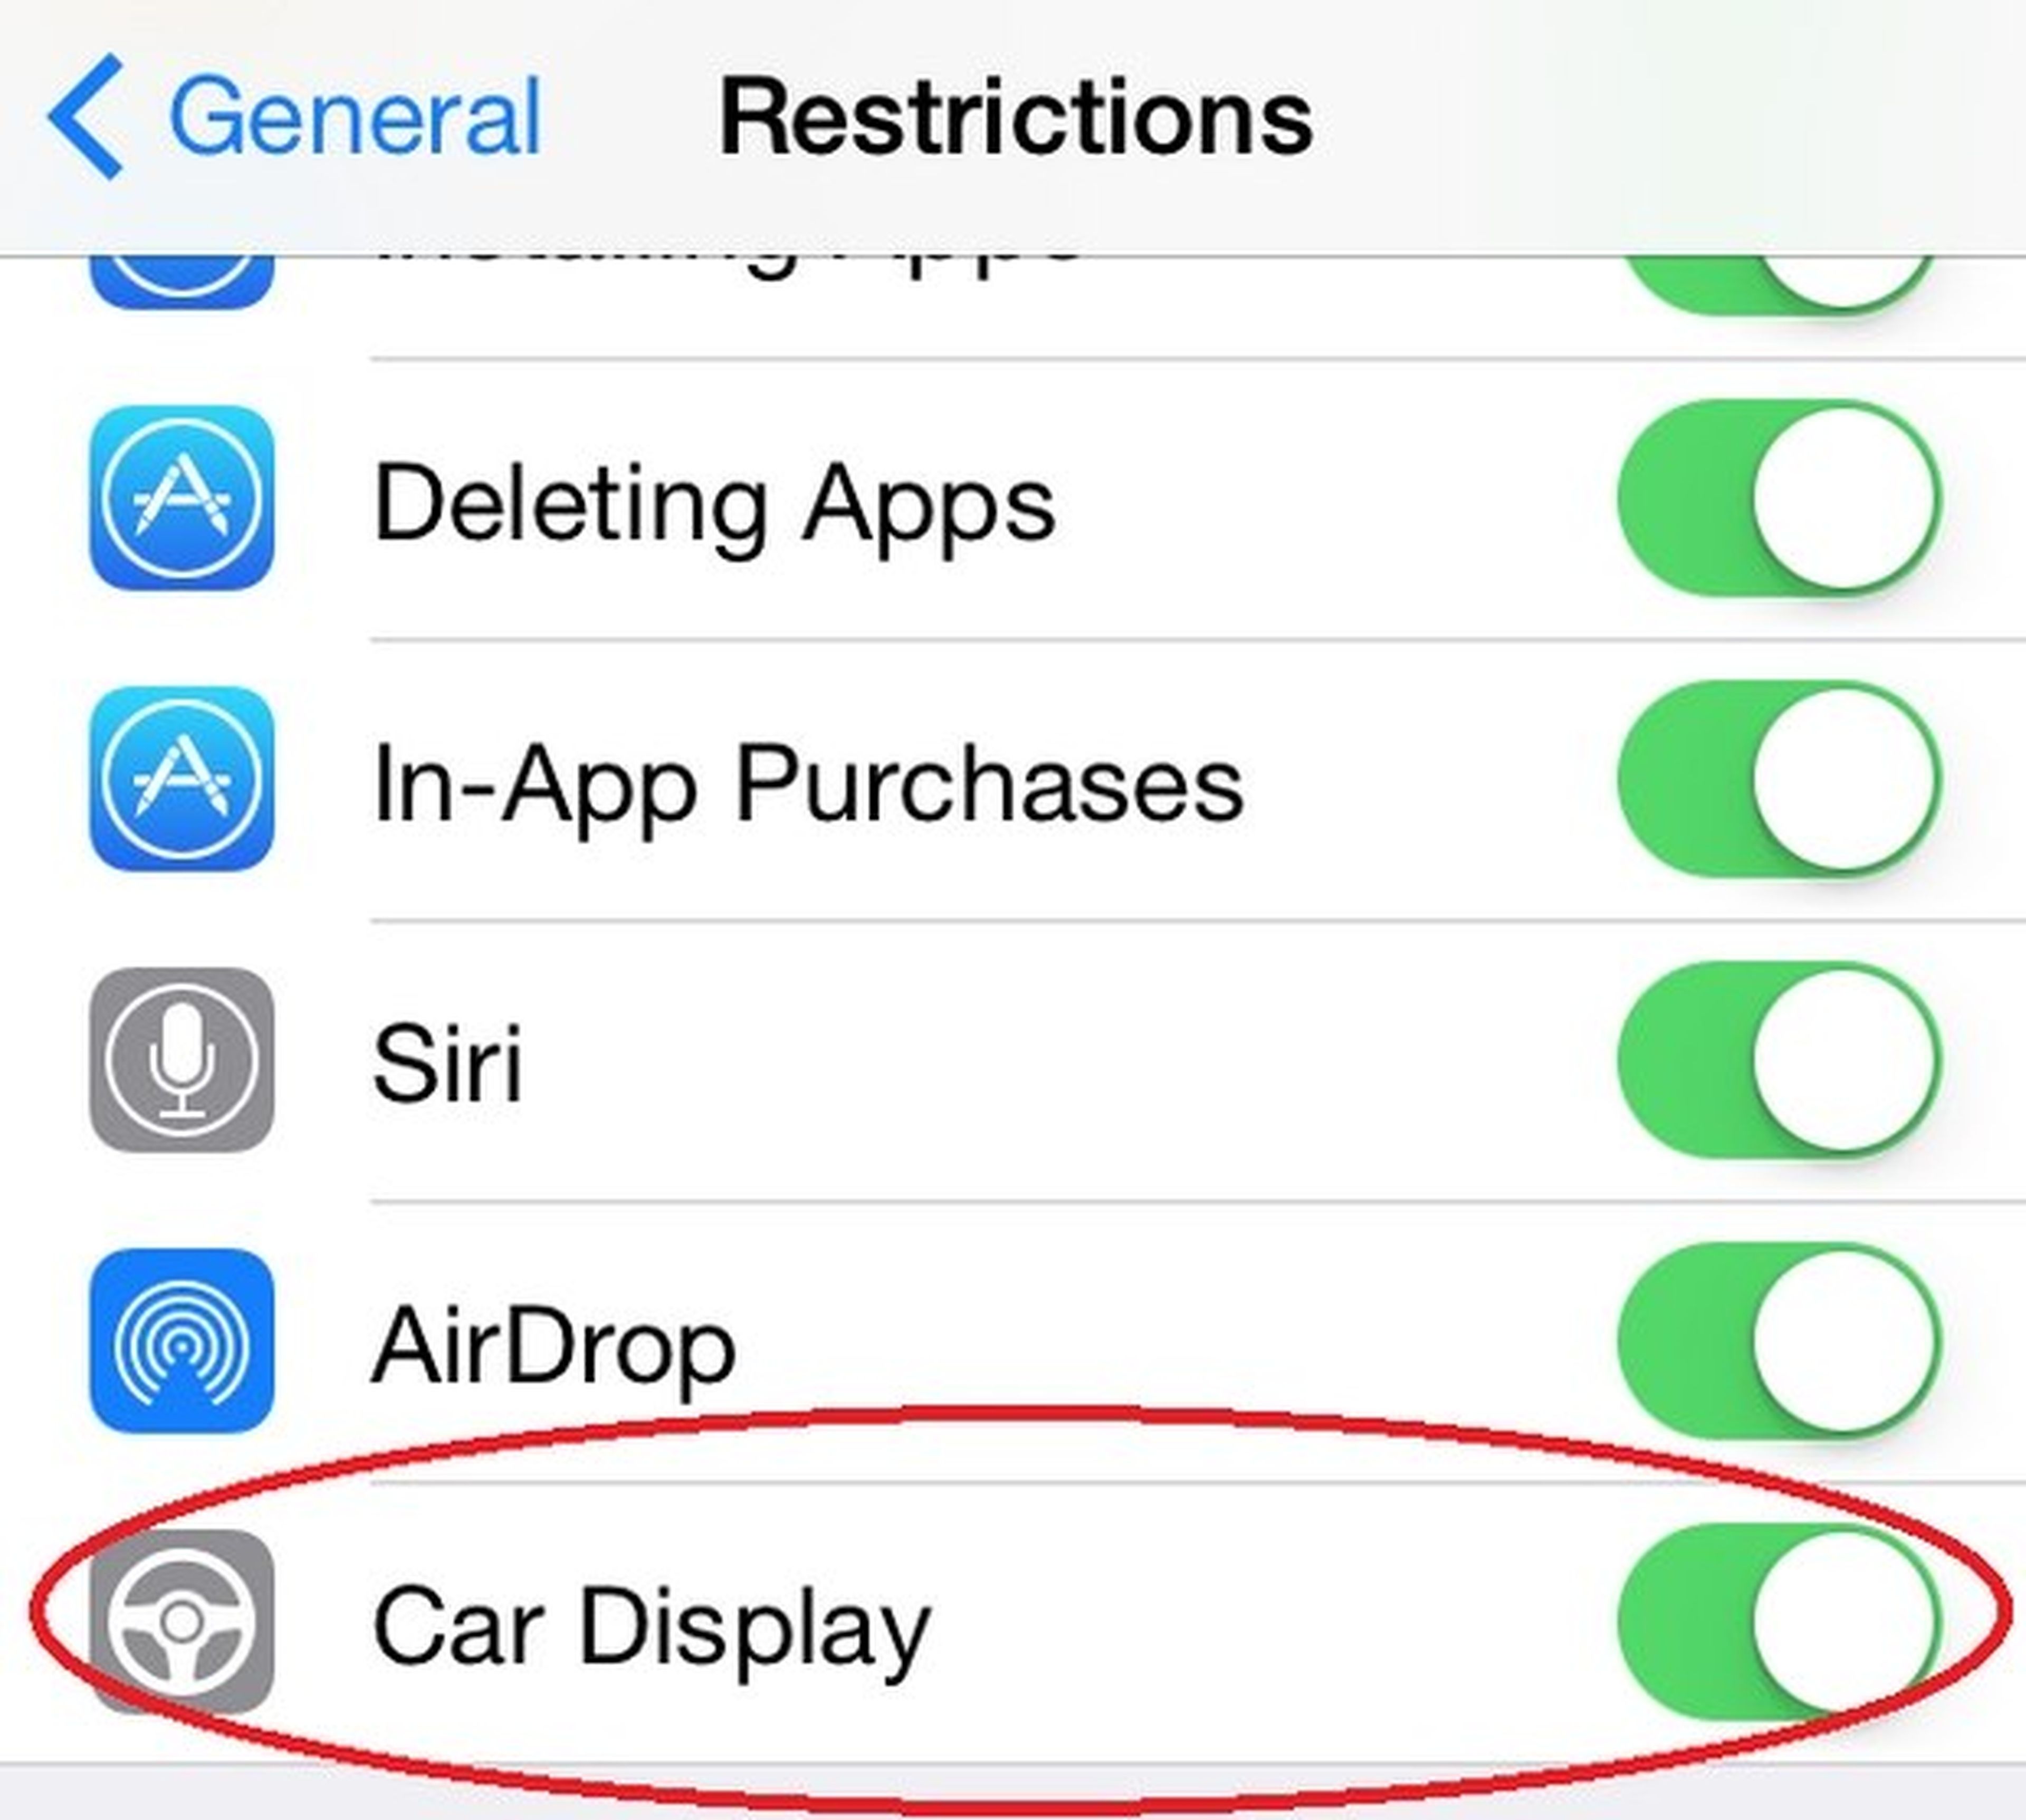 Car Display iOS 7